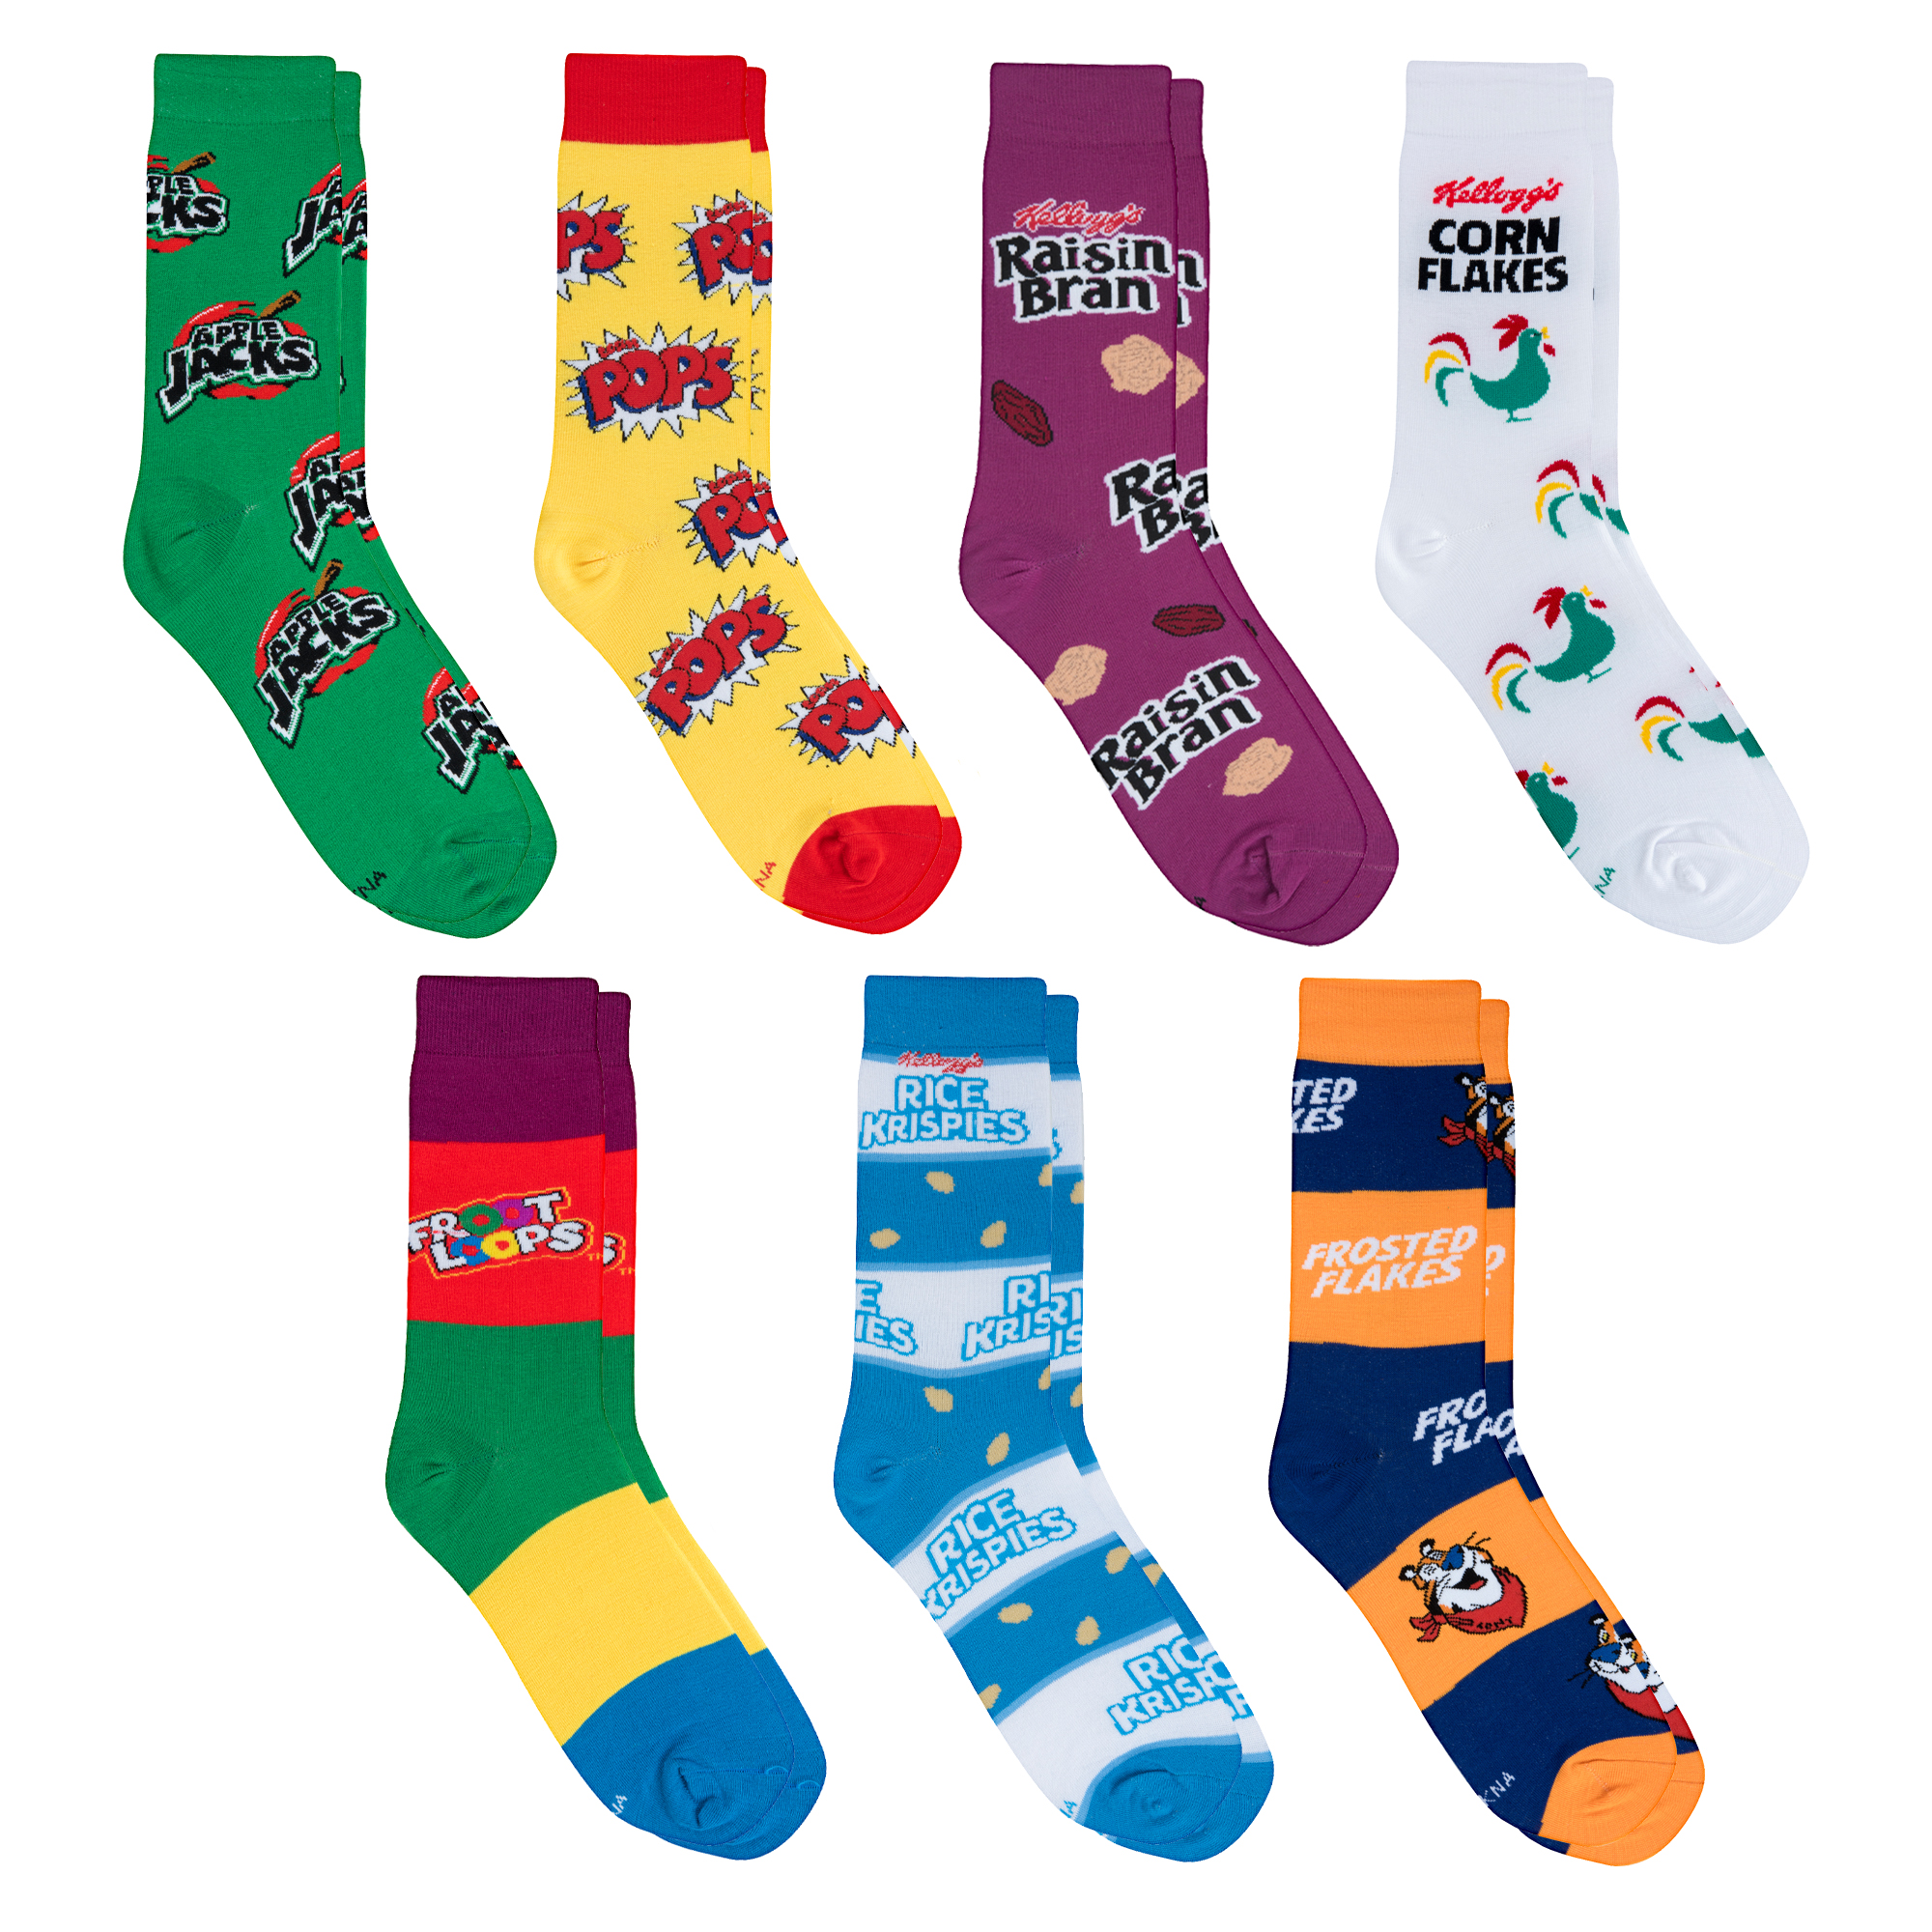 Haiem Avocado and Hearts Socks, Funny Novelty Crazy Design Cotton Socks ...